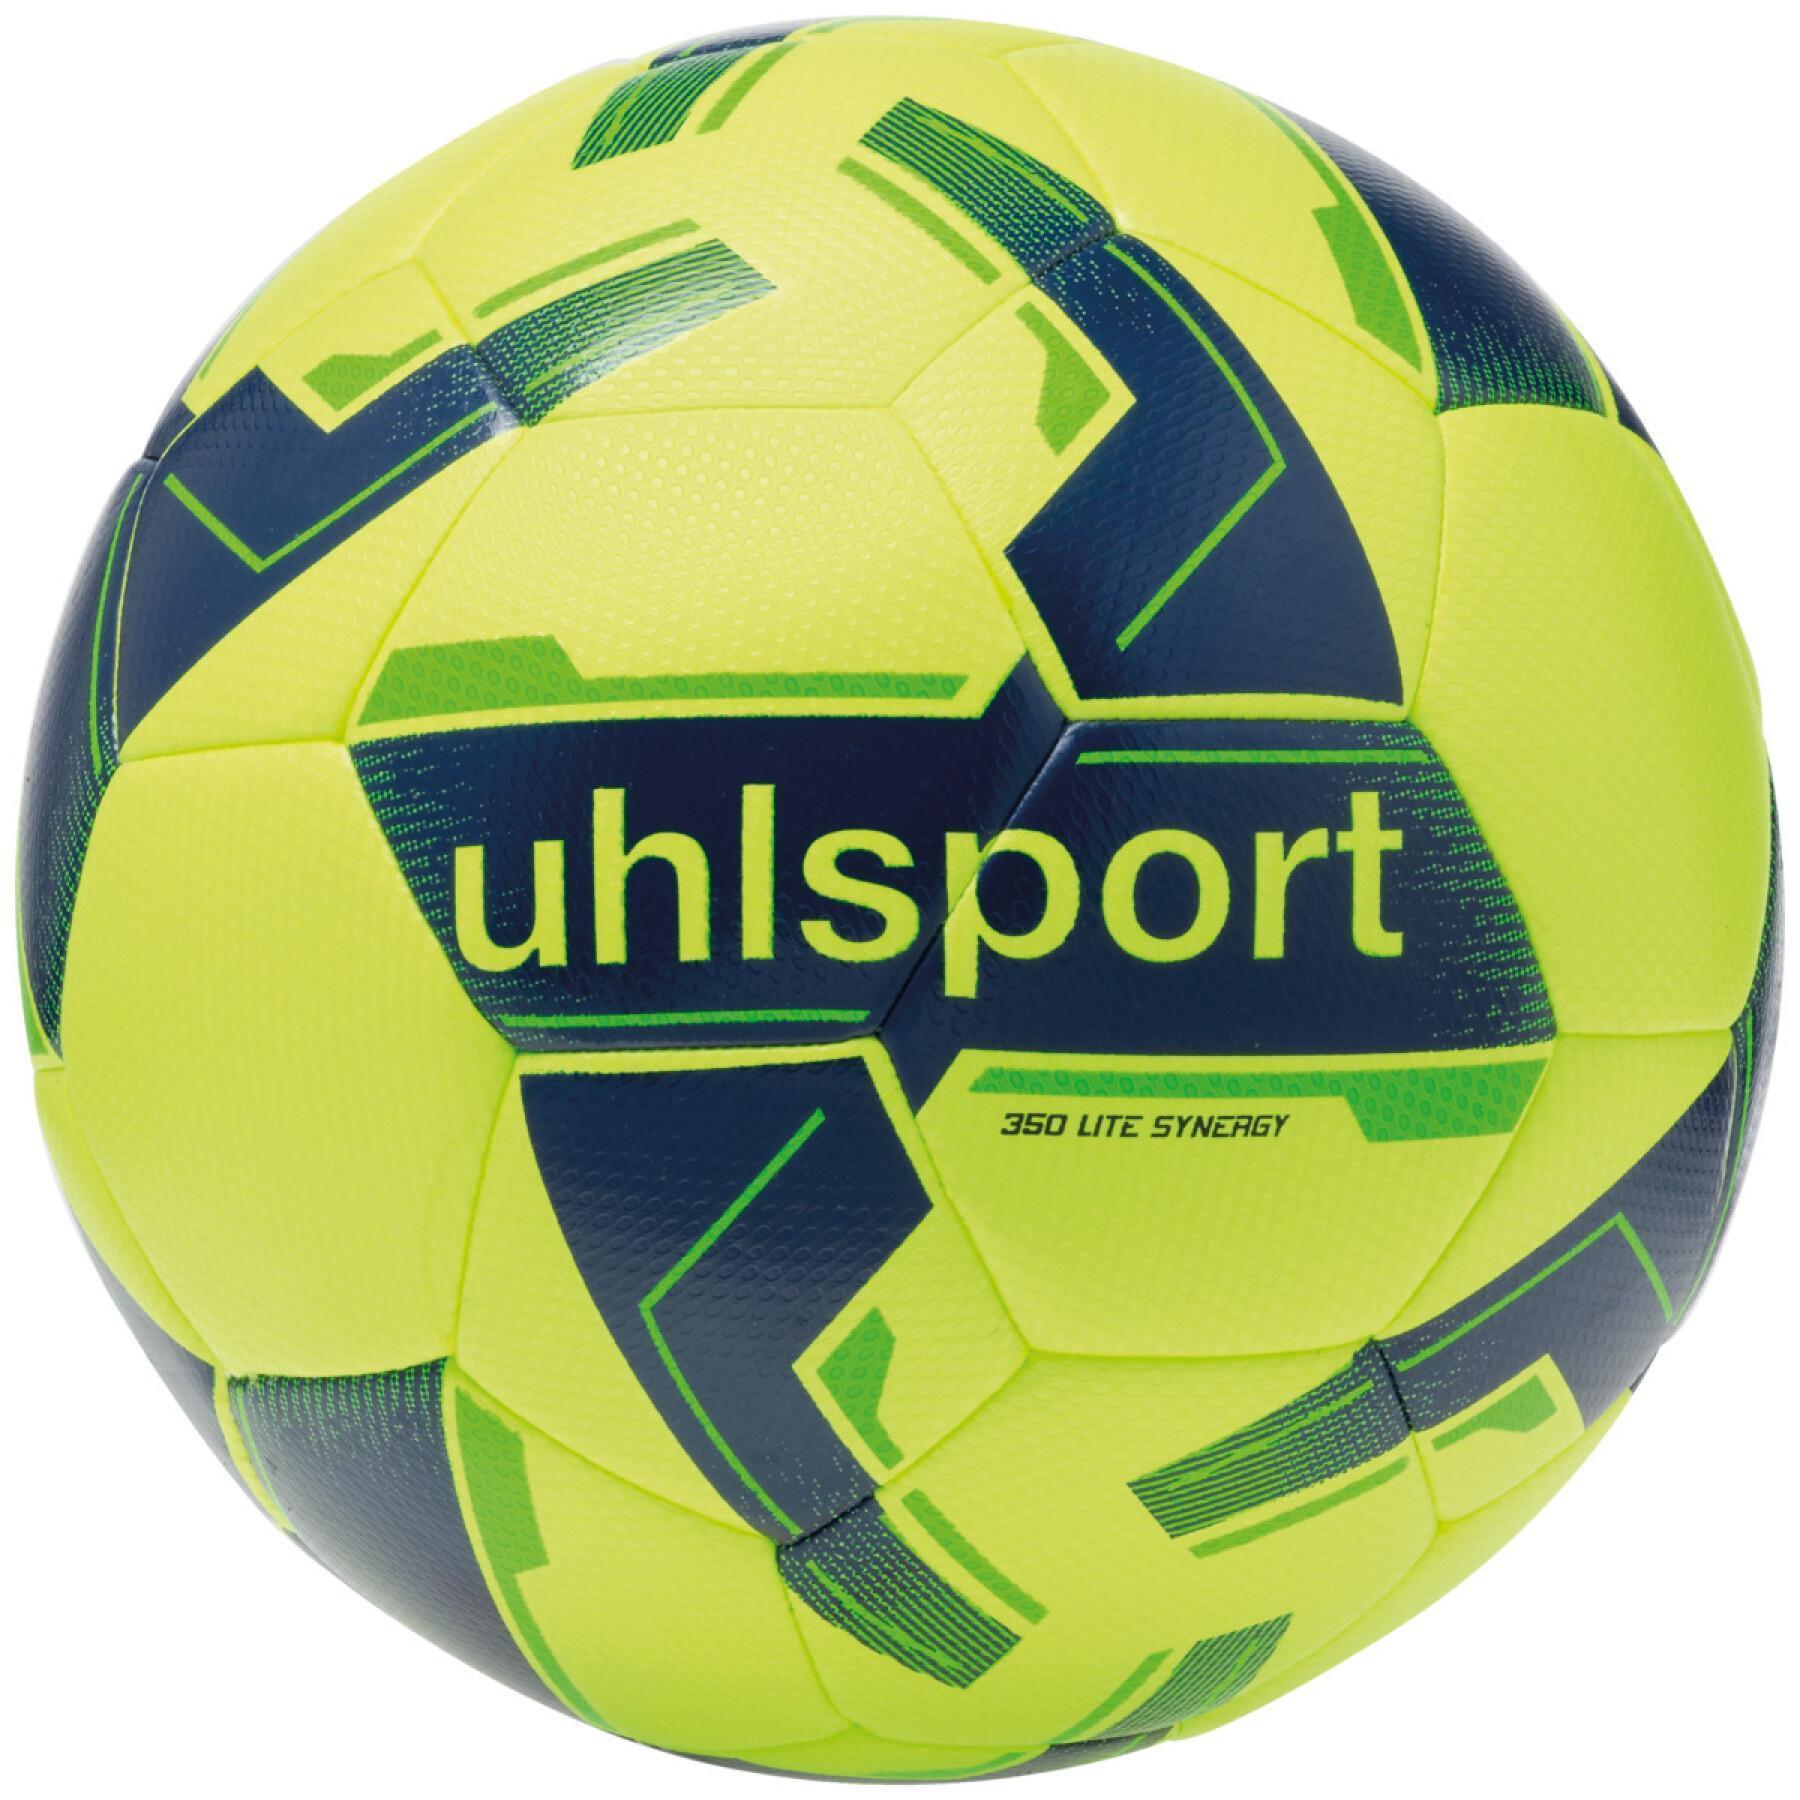 Piłka nożna dla dzieci Uhlsport 350 Lite Synergy